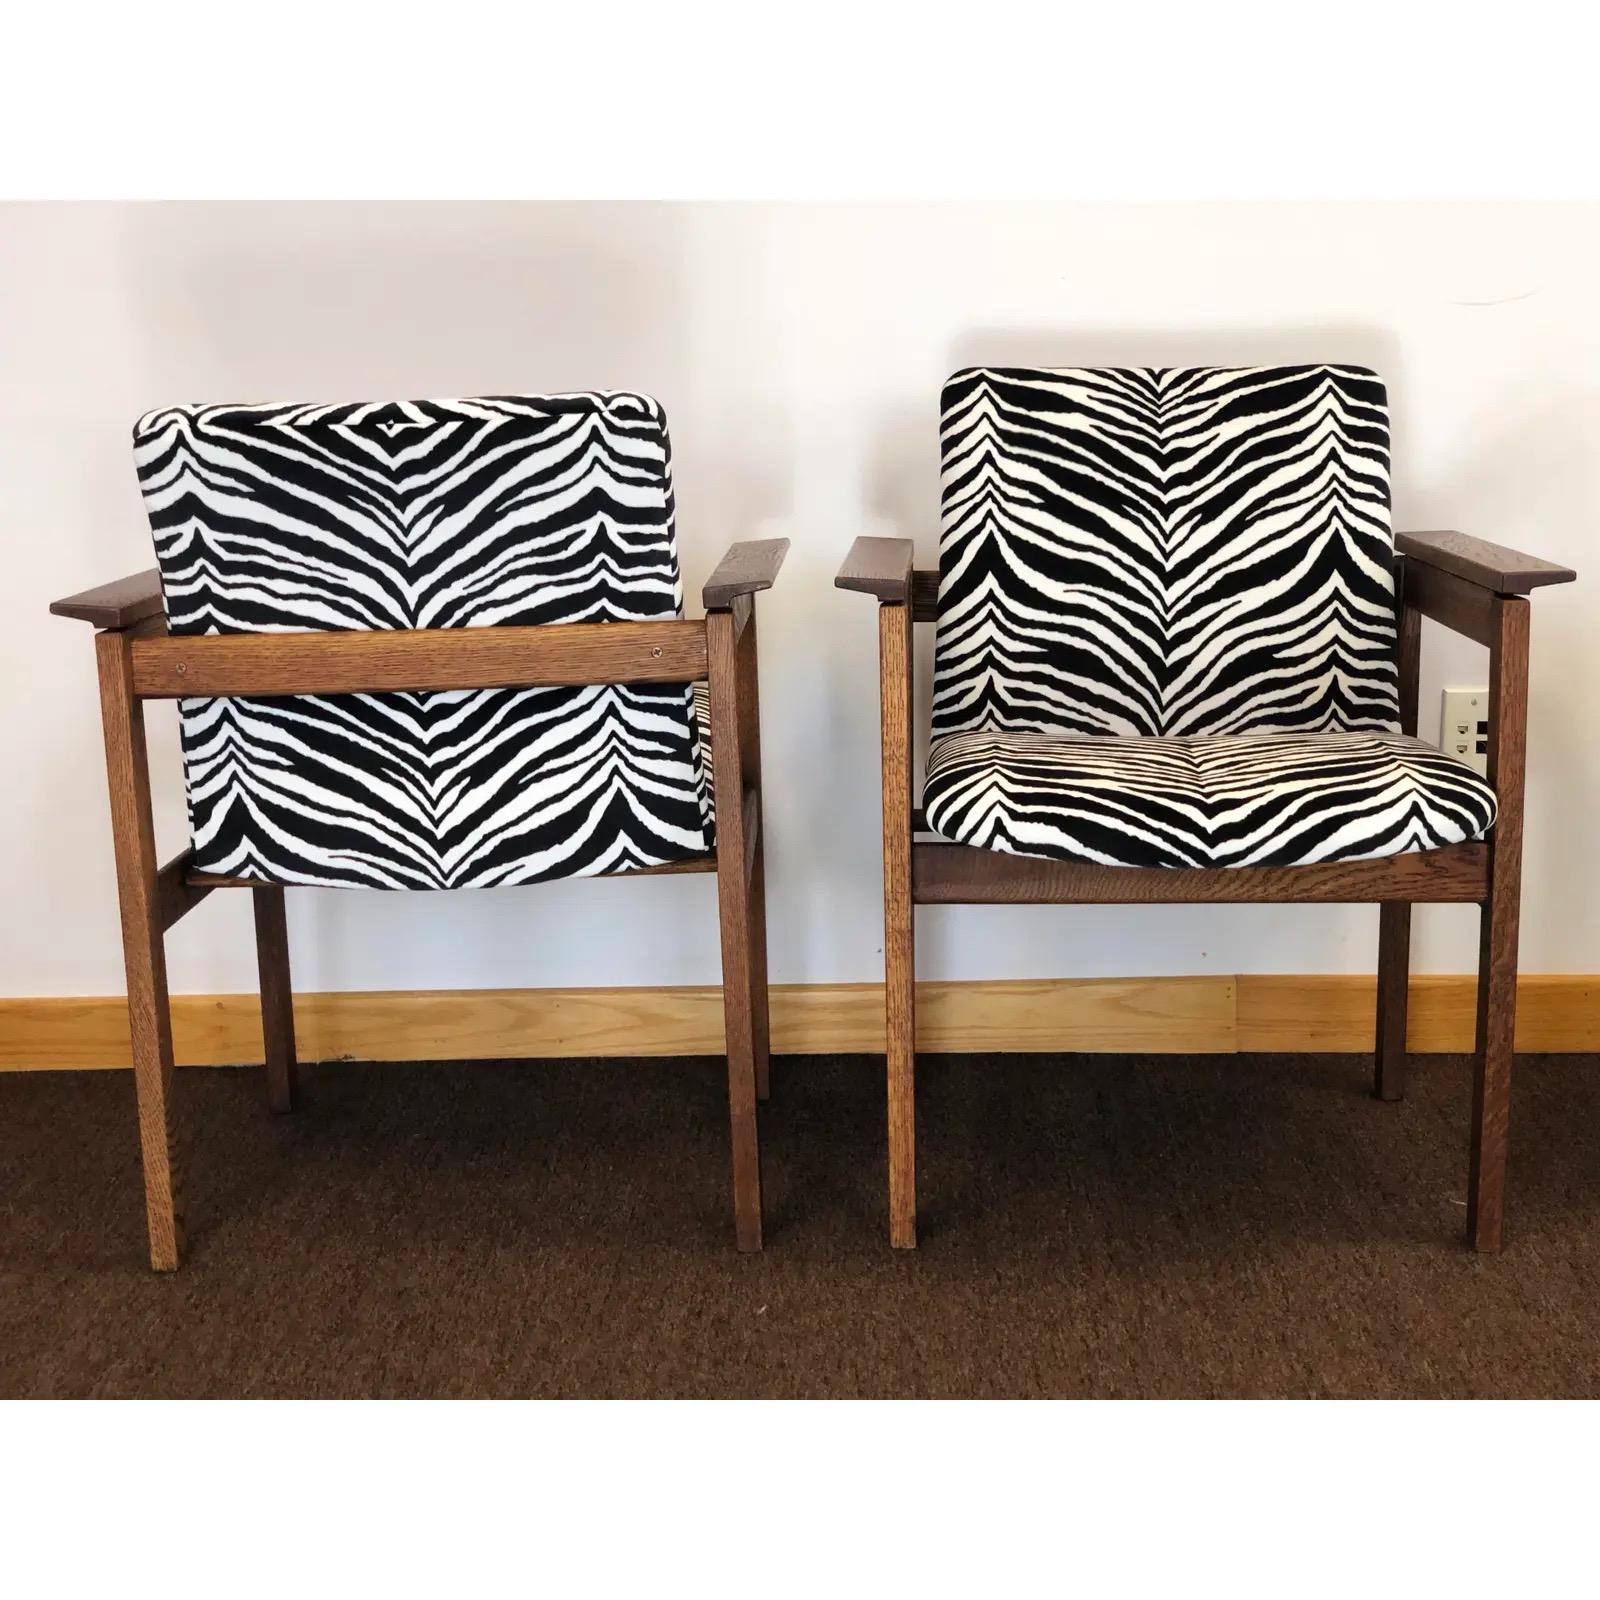 Nous avons le plaisir de vous proposer une magnifique paire de chaises longues de style Mid-Century Modern, réalisées par Jens Risom, vers les années 1960. Ce fabuleux ensemble a été nouvellement garni d'un revêtement en velours à rayures zébrées.